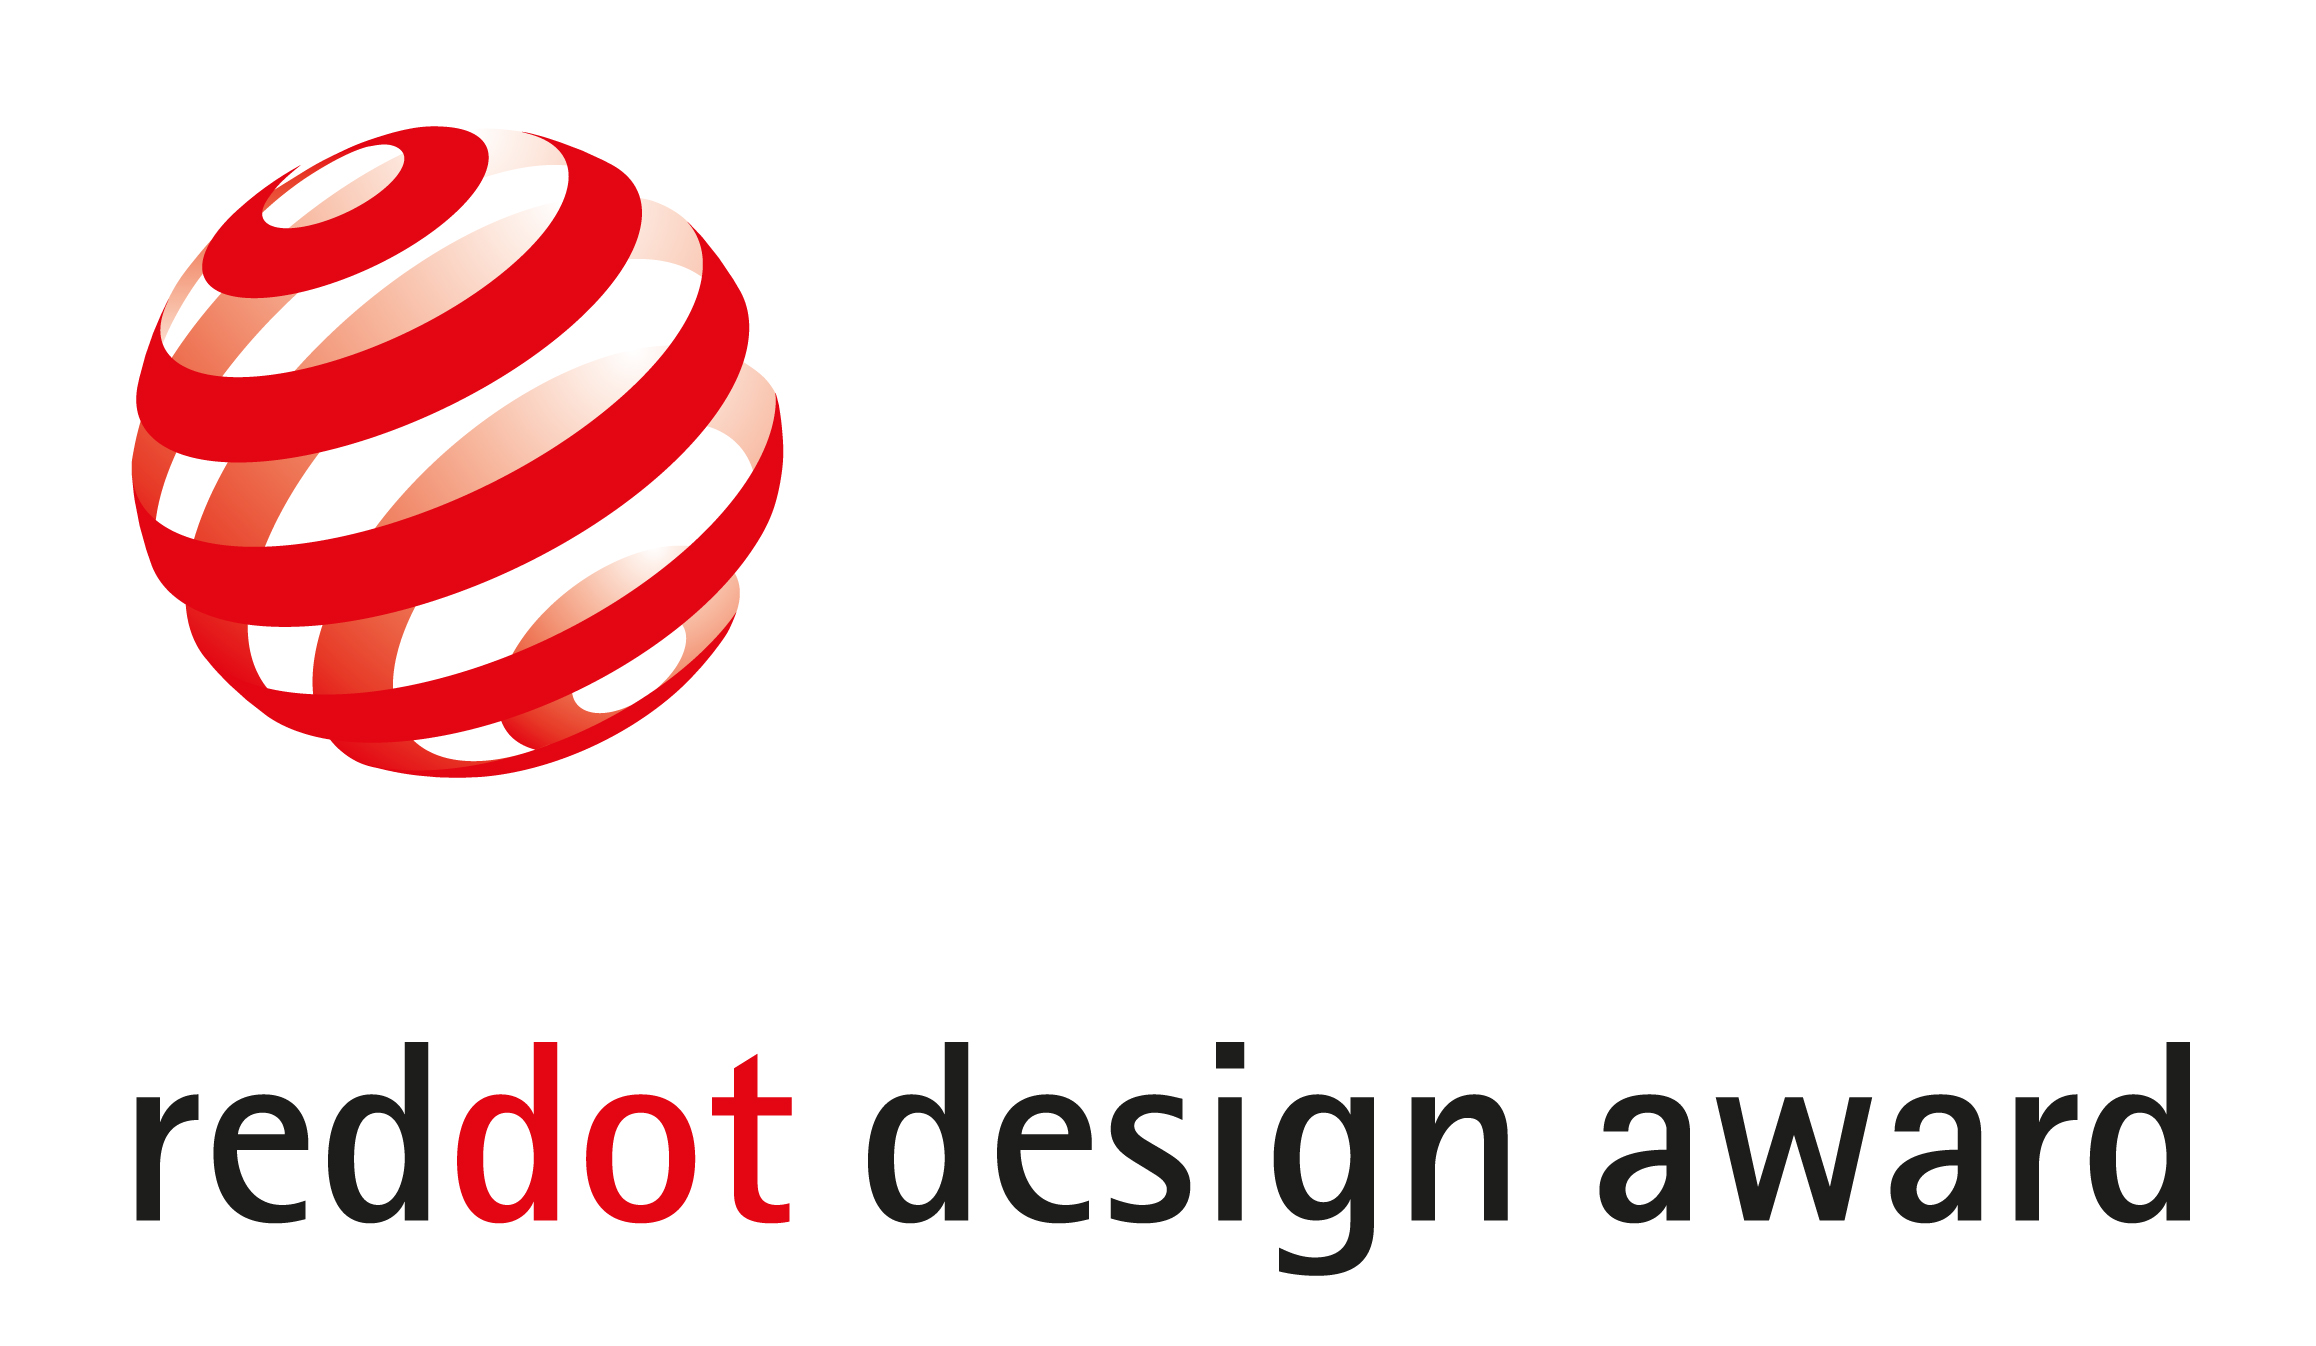 giai-thuong-reddot-design-award